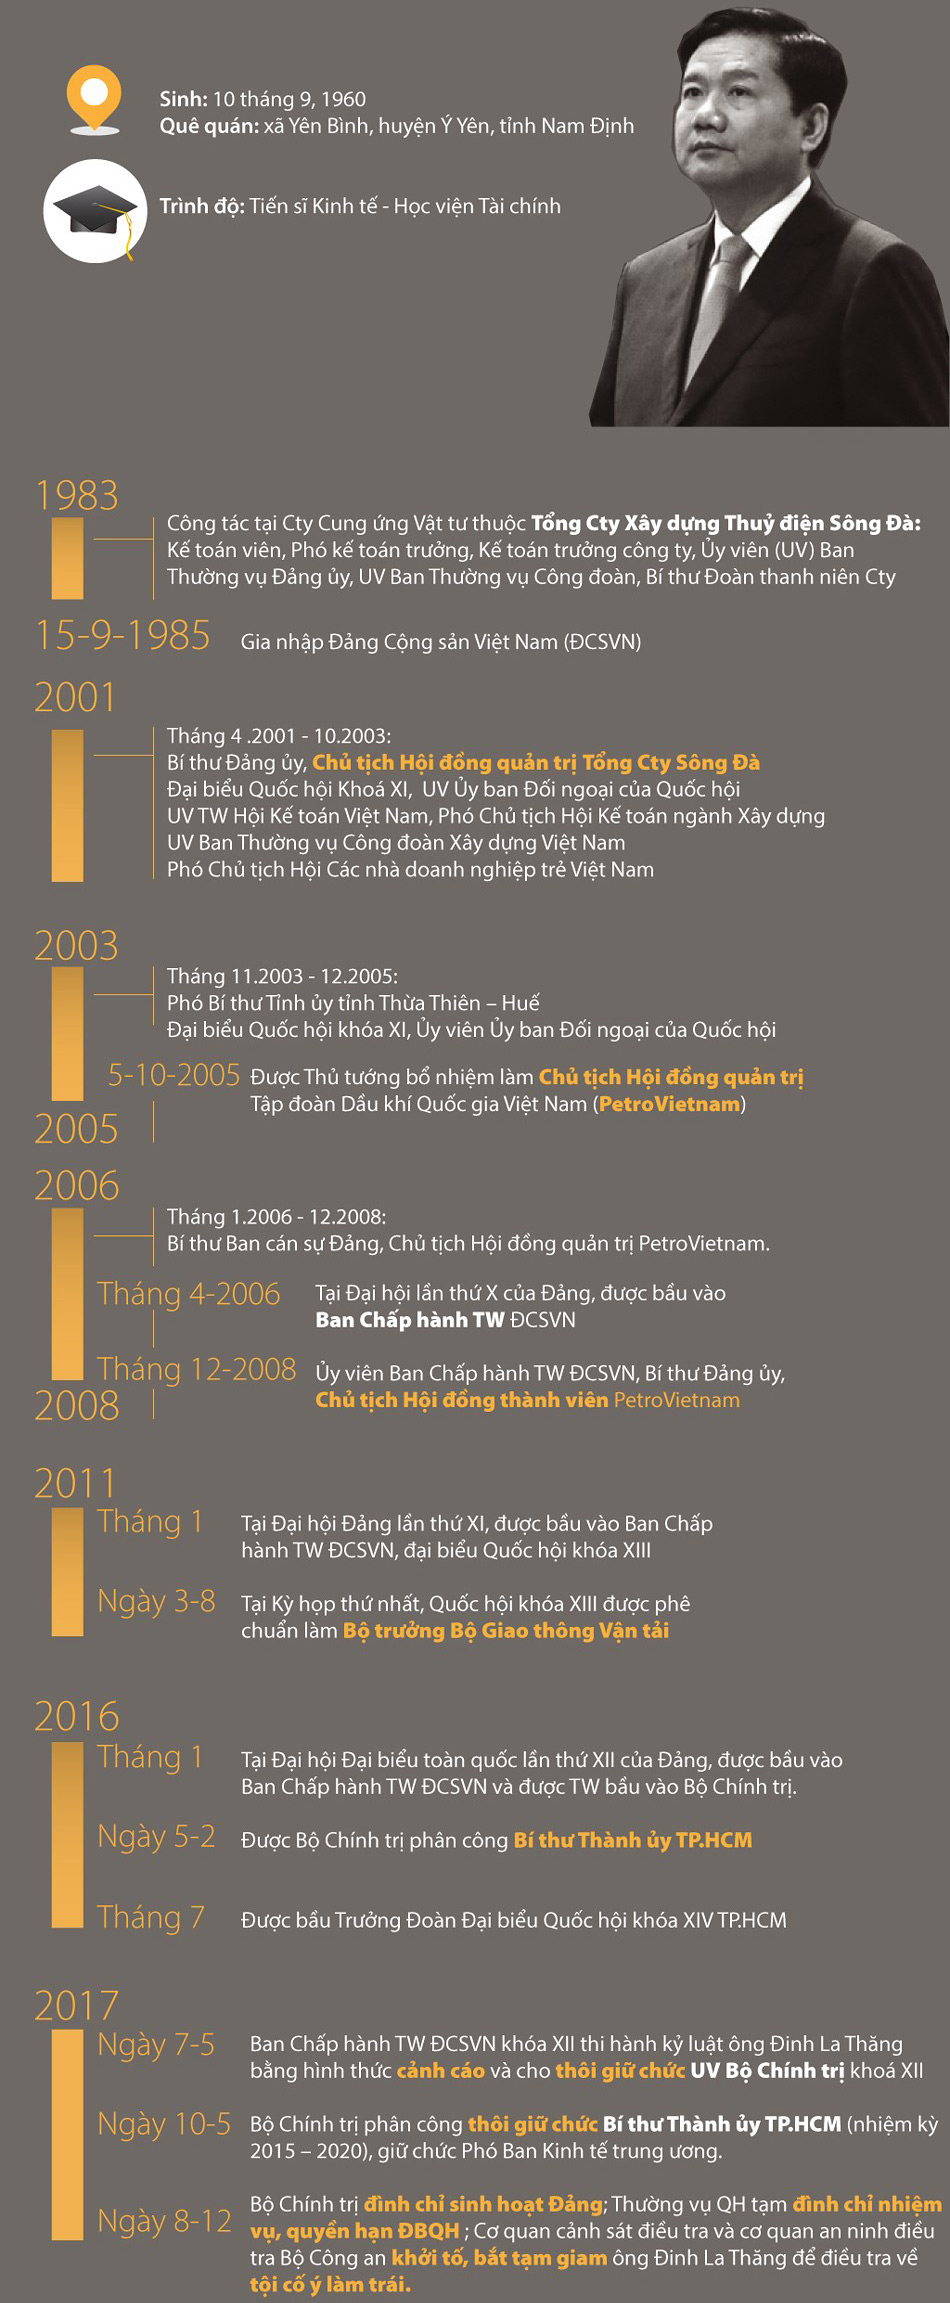 Infographic: Ông Đinh La Thăng, những dấu mốc thời gian - 1